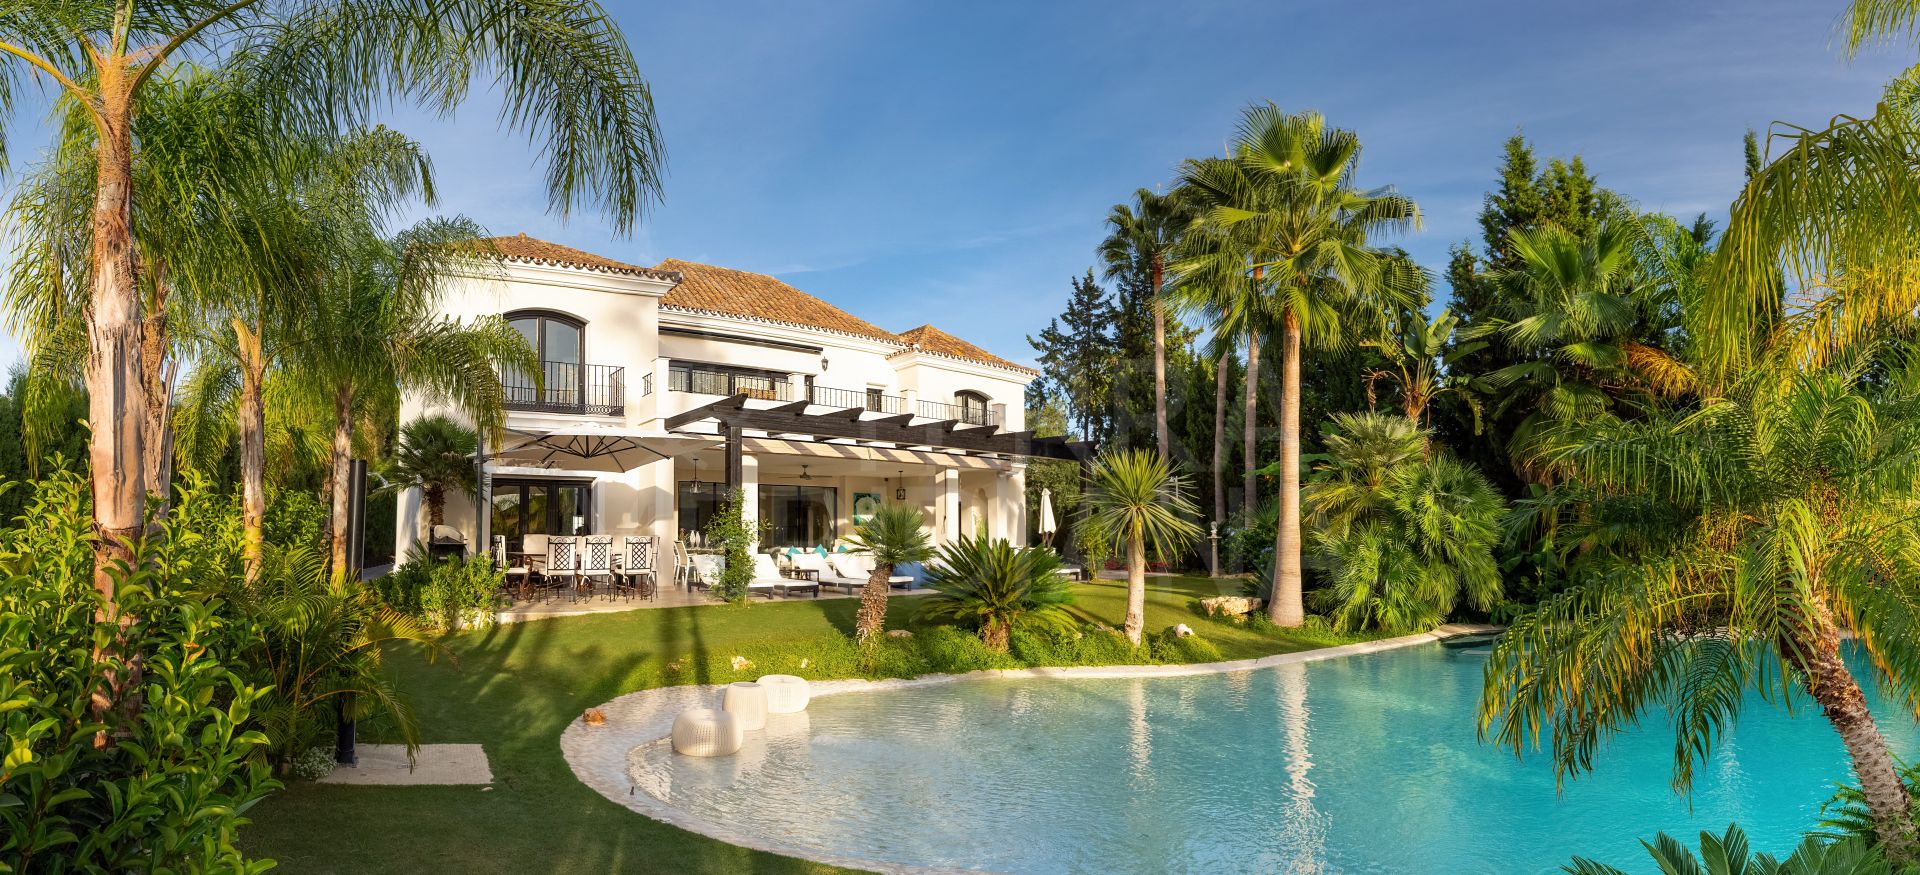 Sensational 8 bedroom luxury villa for sale in prestigious Nueva Andalucia, Marbella